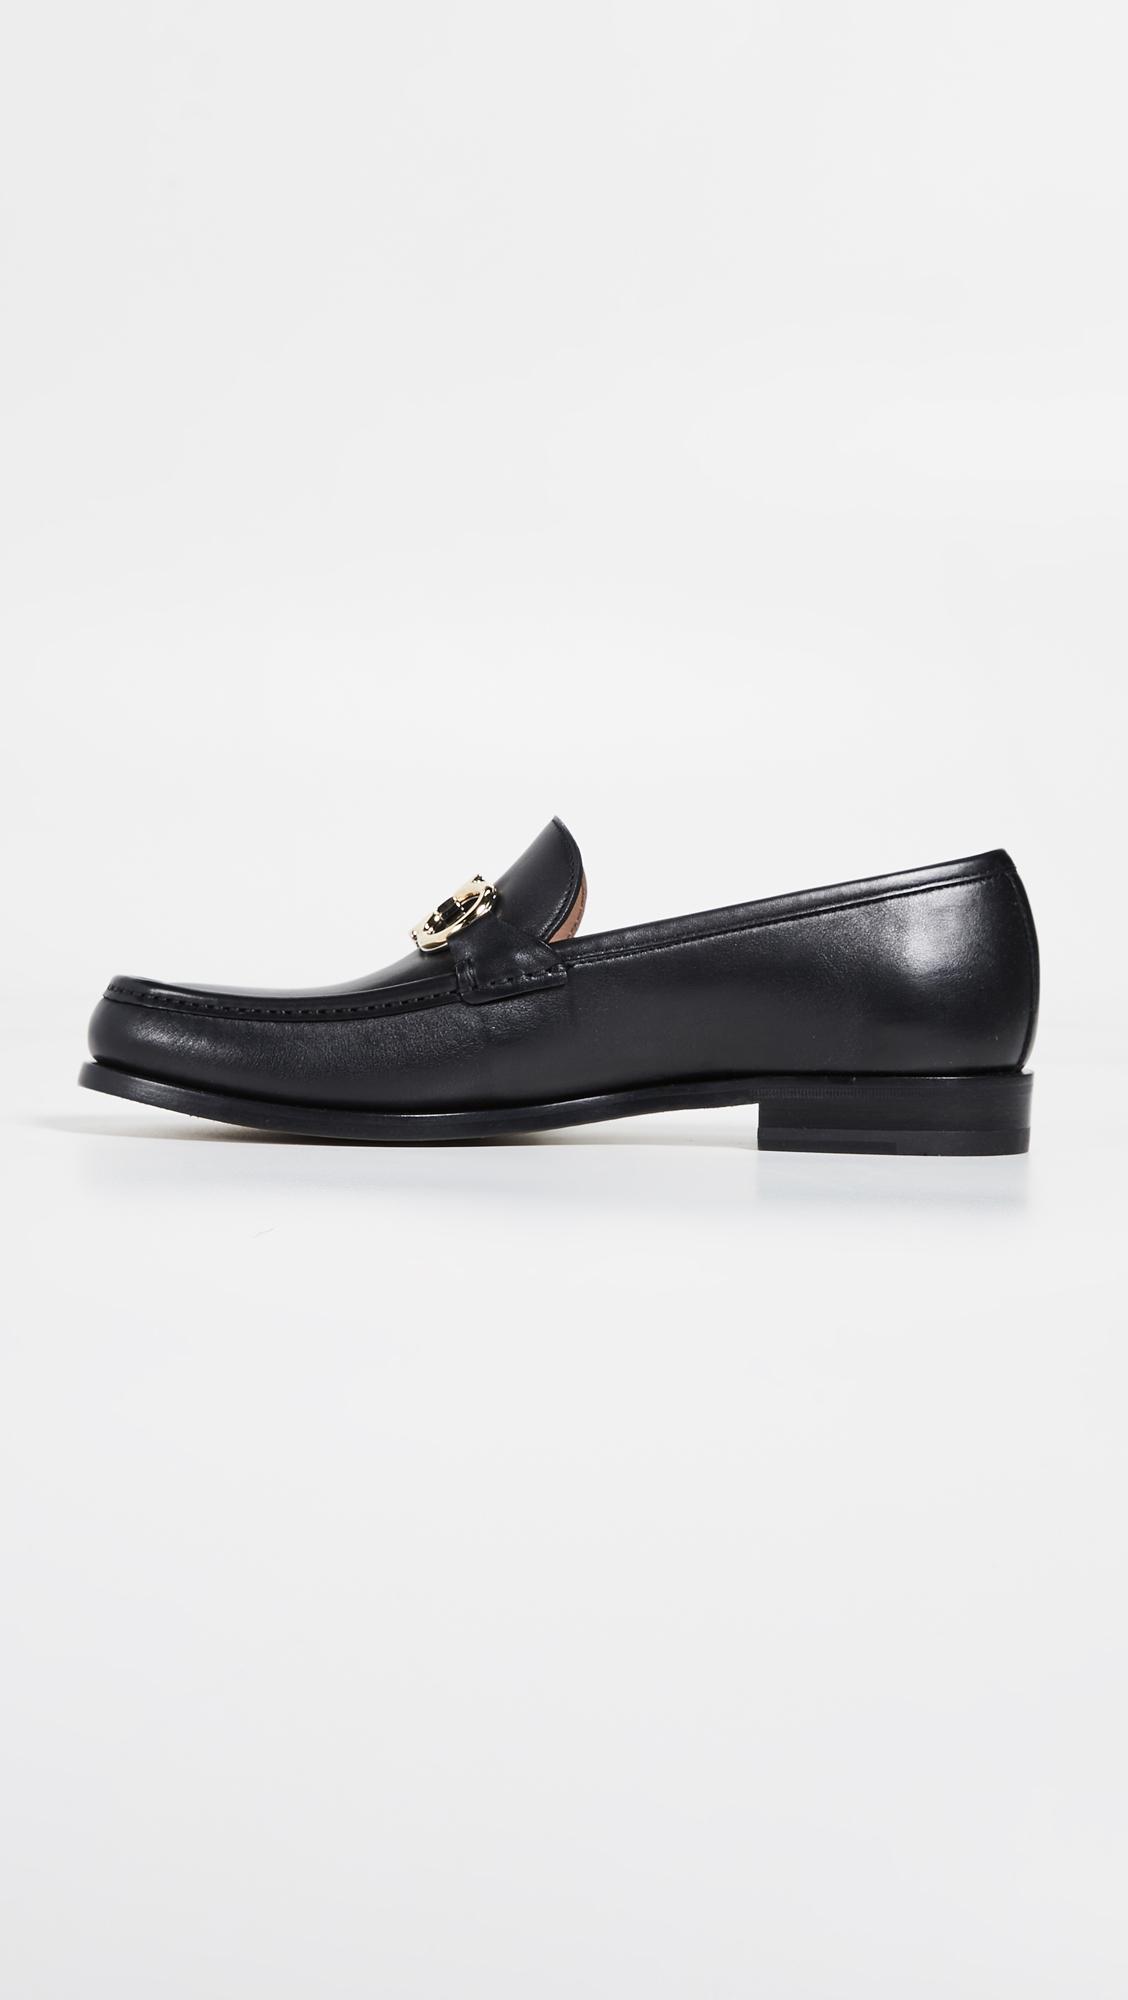 Ferragamo Leather Rolo Reversible Bit Loafers in Black for Men - Lyst